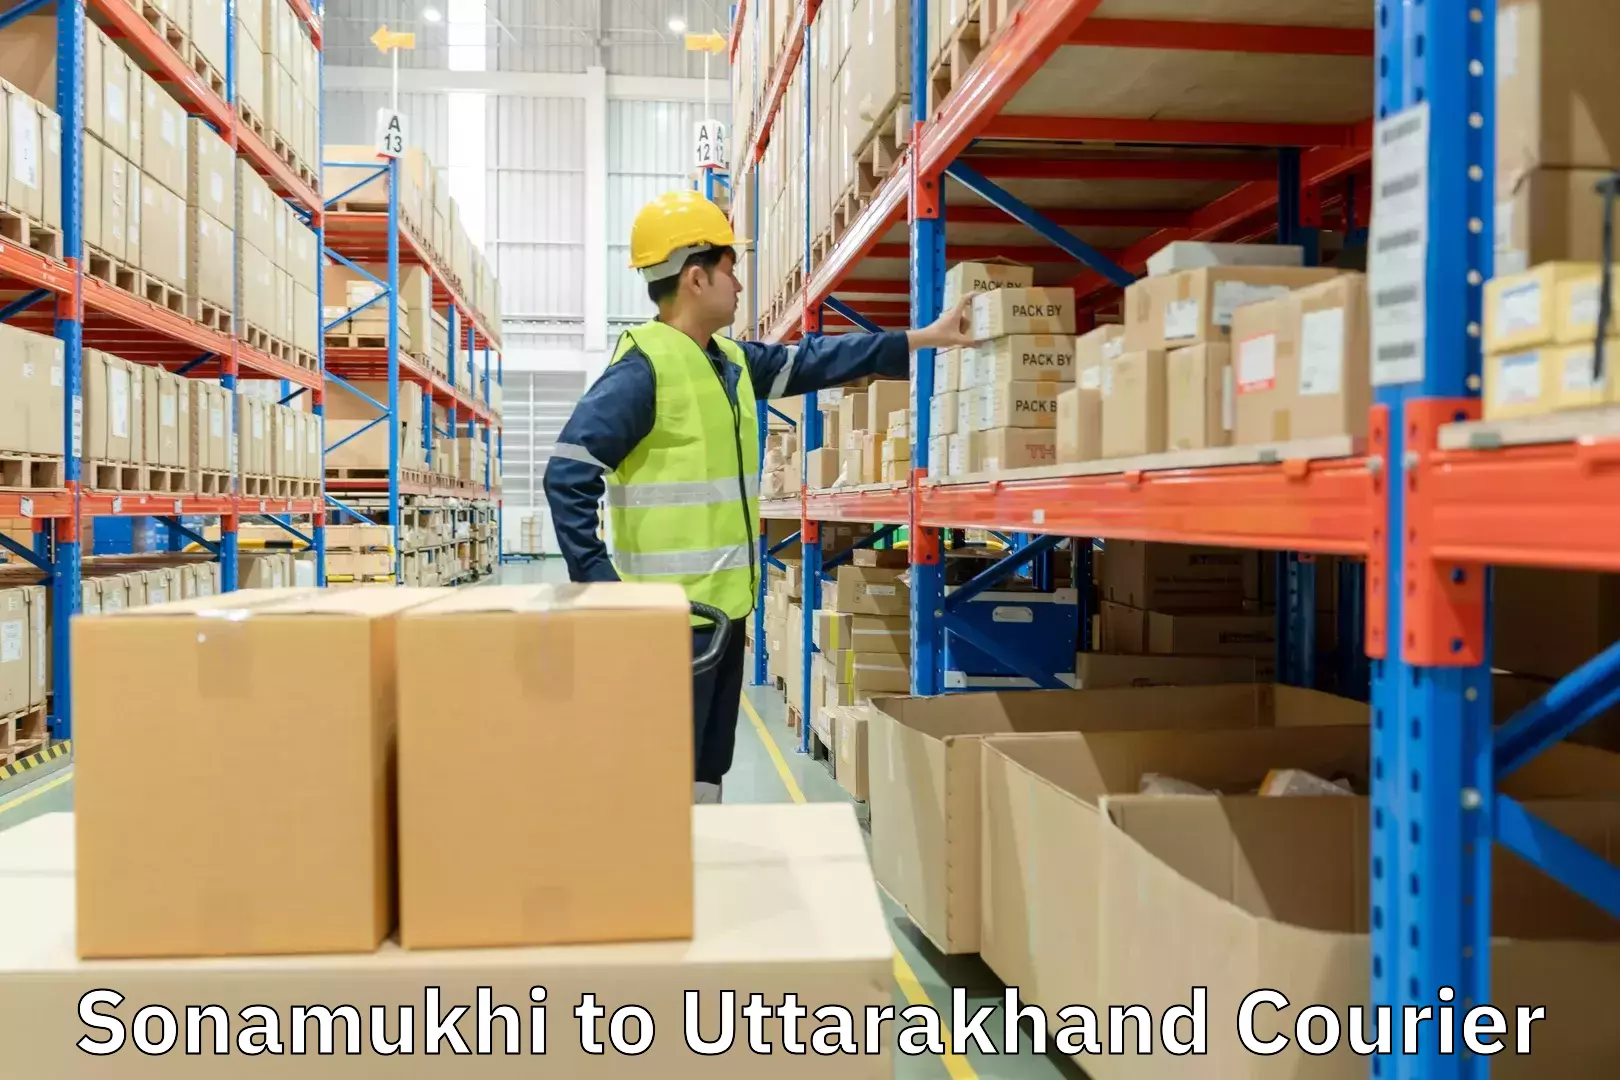 Large package courier Sonamukhi to Uttarakhand